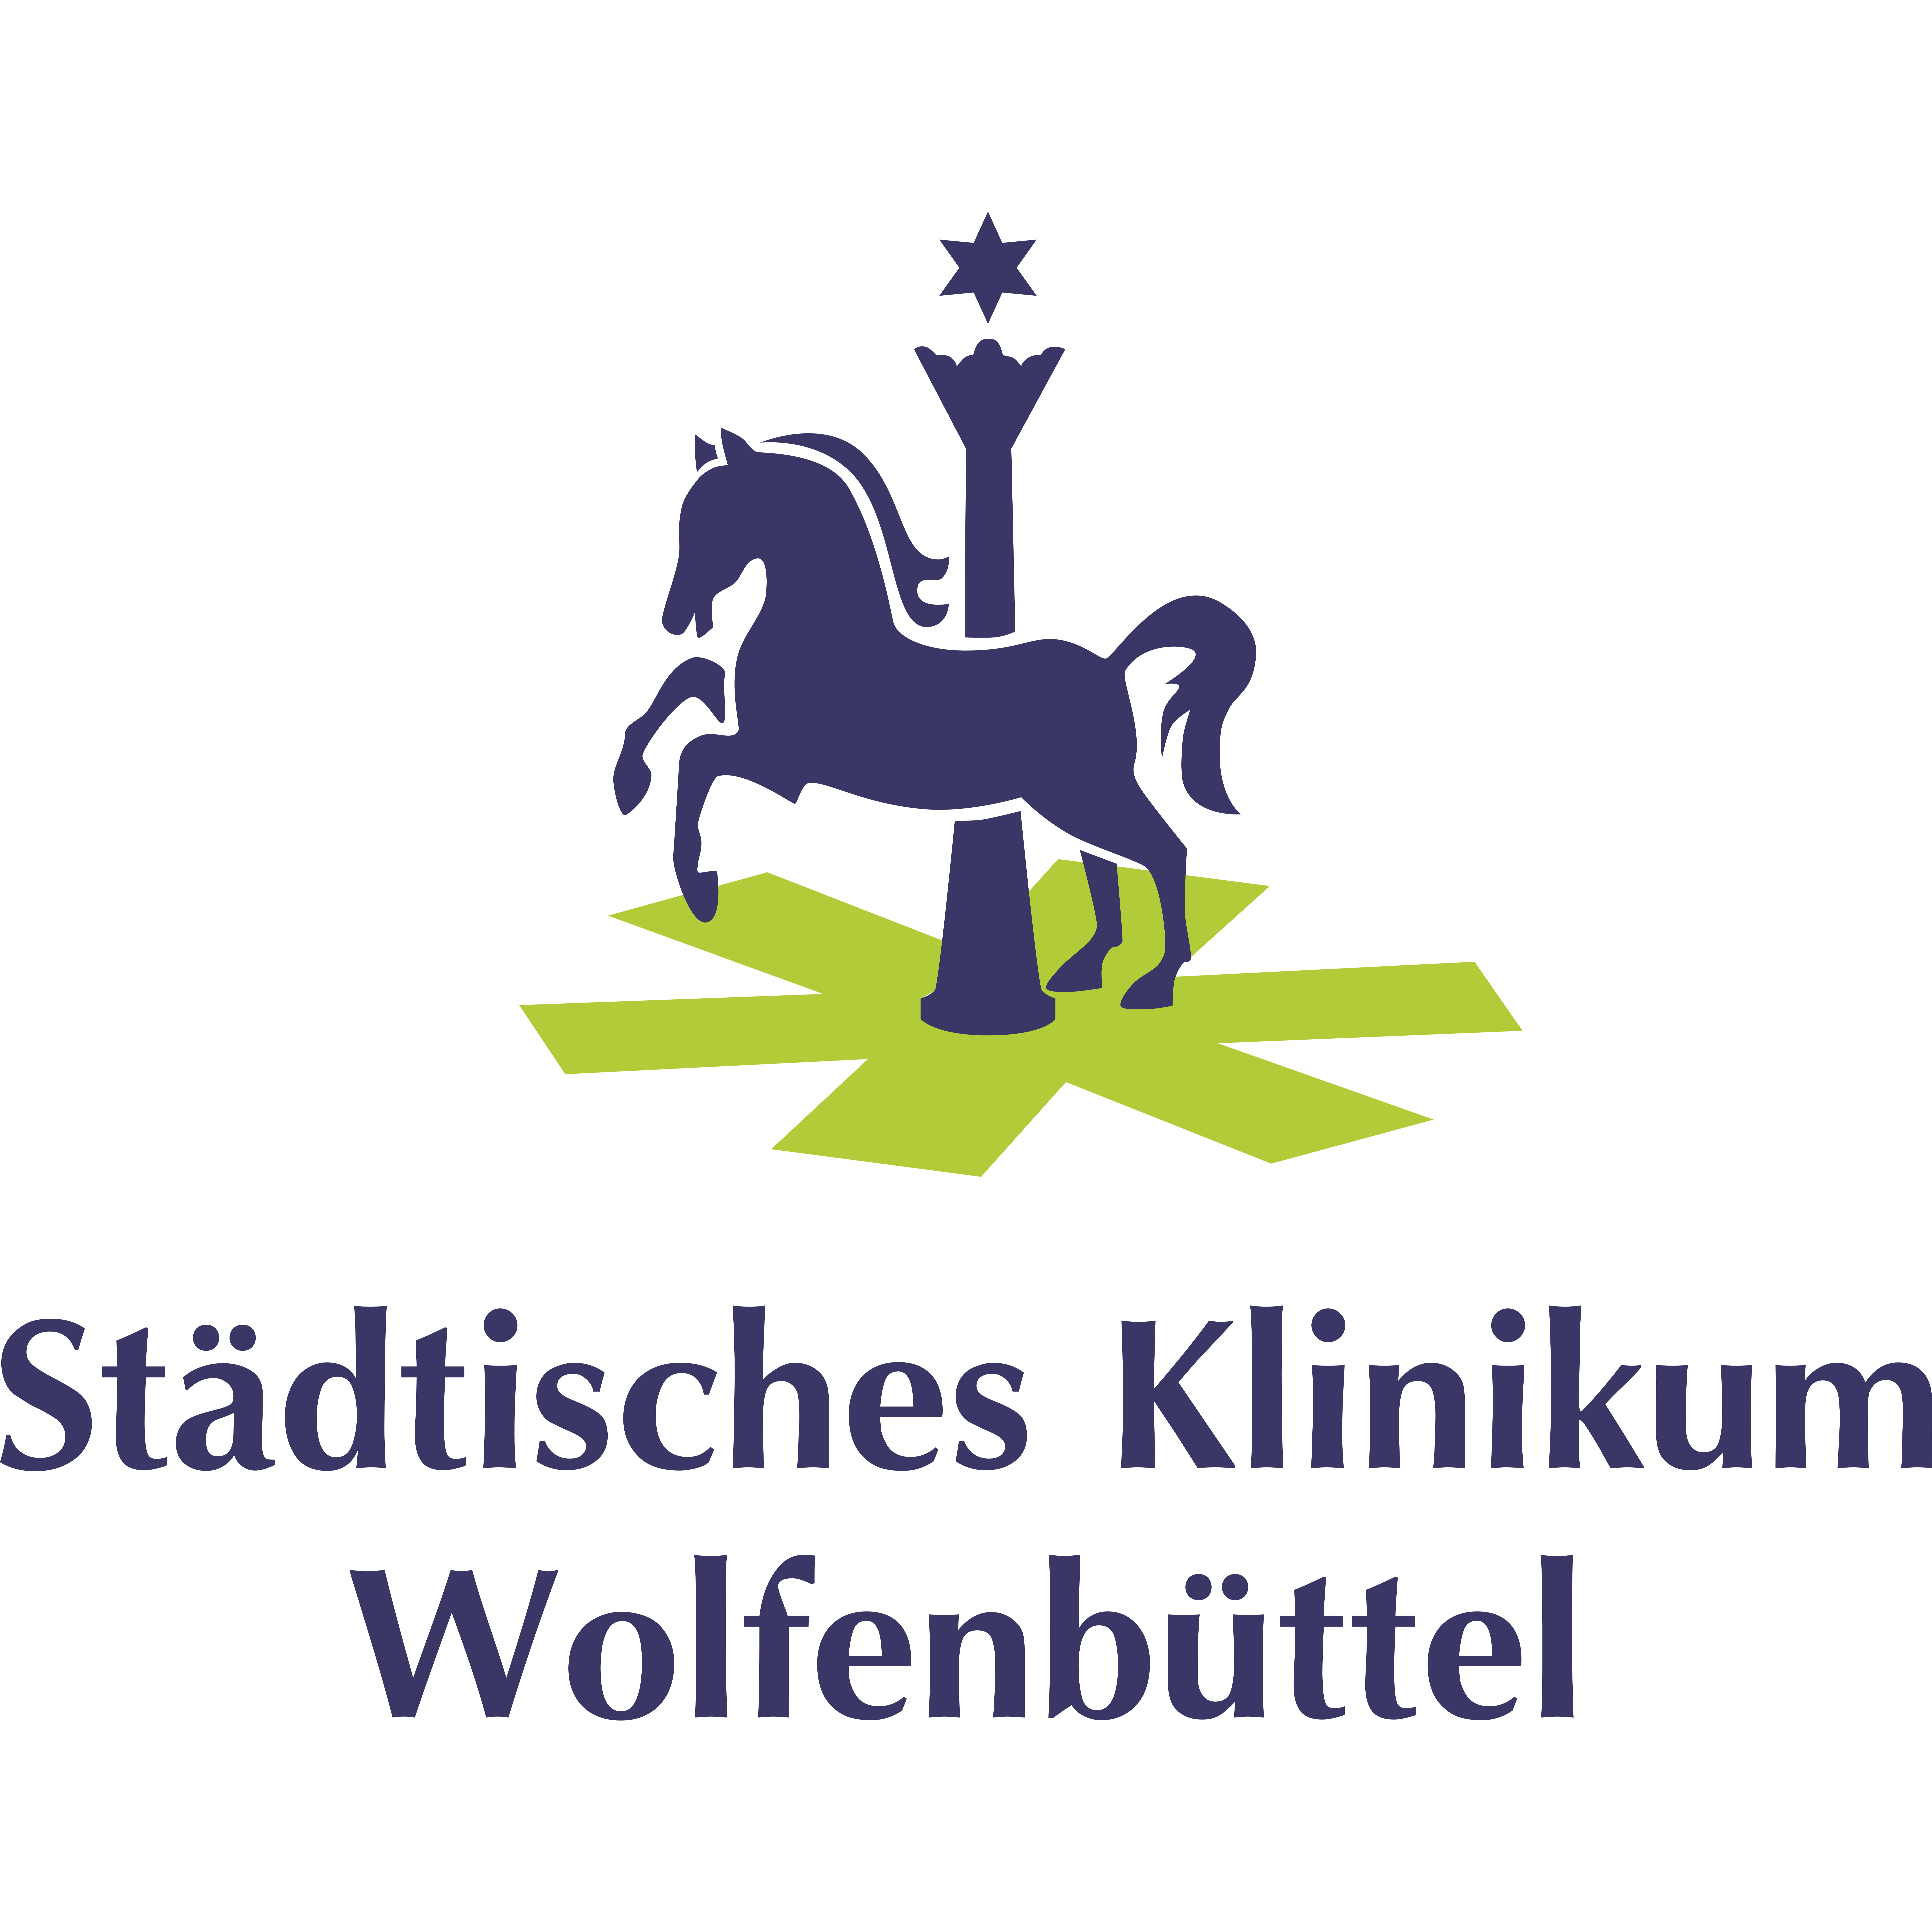 Städtisches Klinikum Wolfenbüttel gGmbH in Wolfenbüttel - Logo